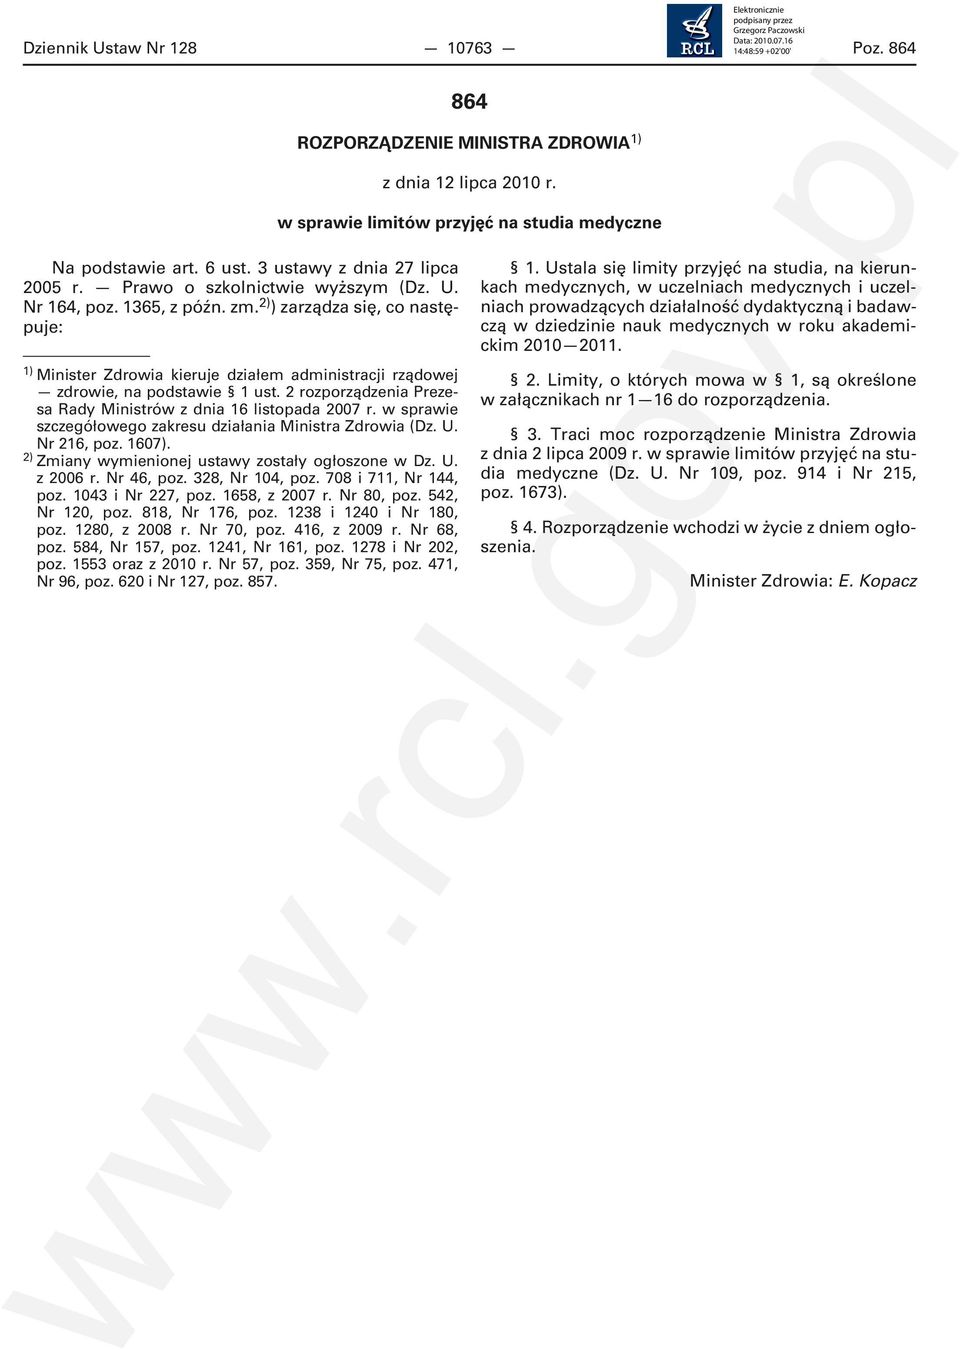 2 rozporządzenia Prezesa Rady Ministrów z dnia 16 listopada 2007 r. w sprawie szczegółowego zakresu działania Ministra Zdrowia (Dz. U. Nr 216, poz. 1607).